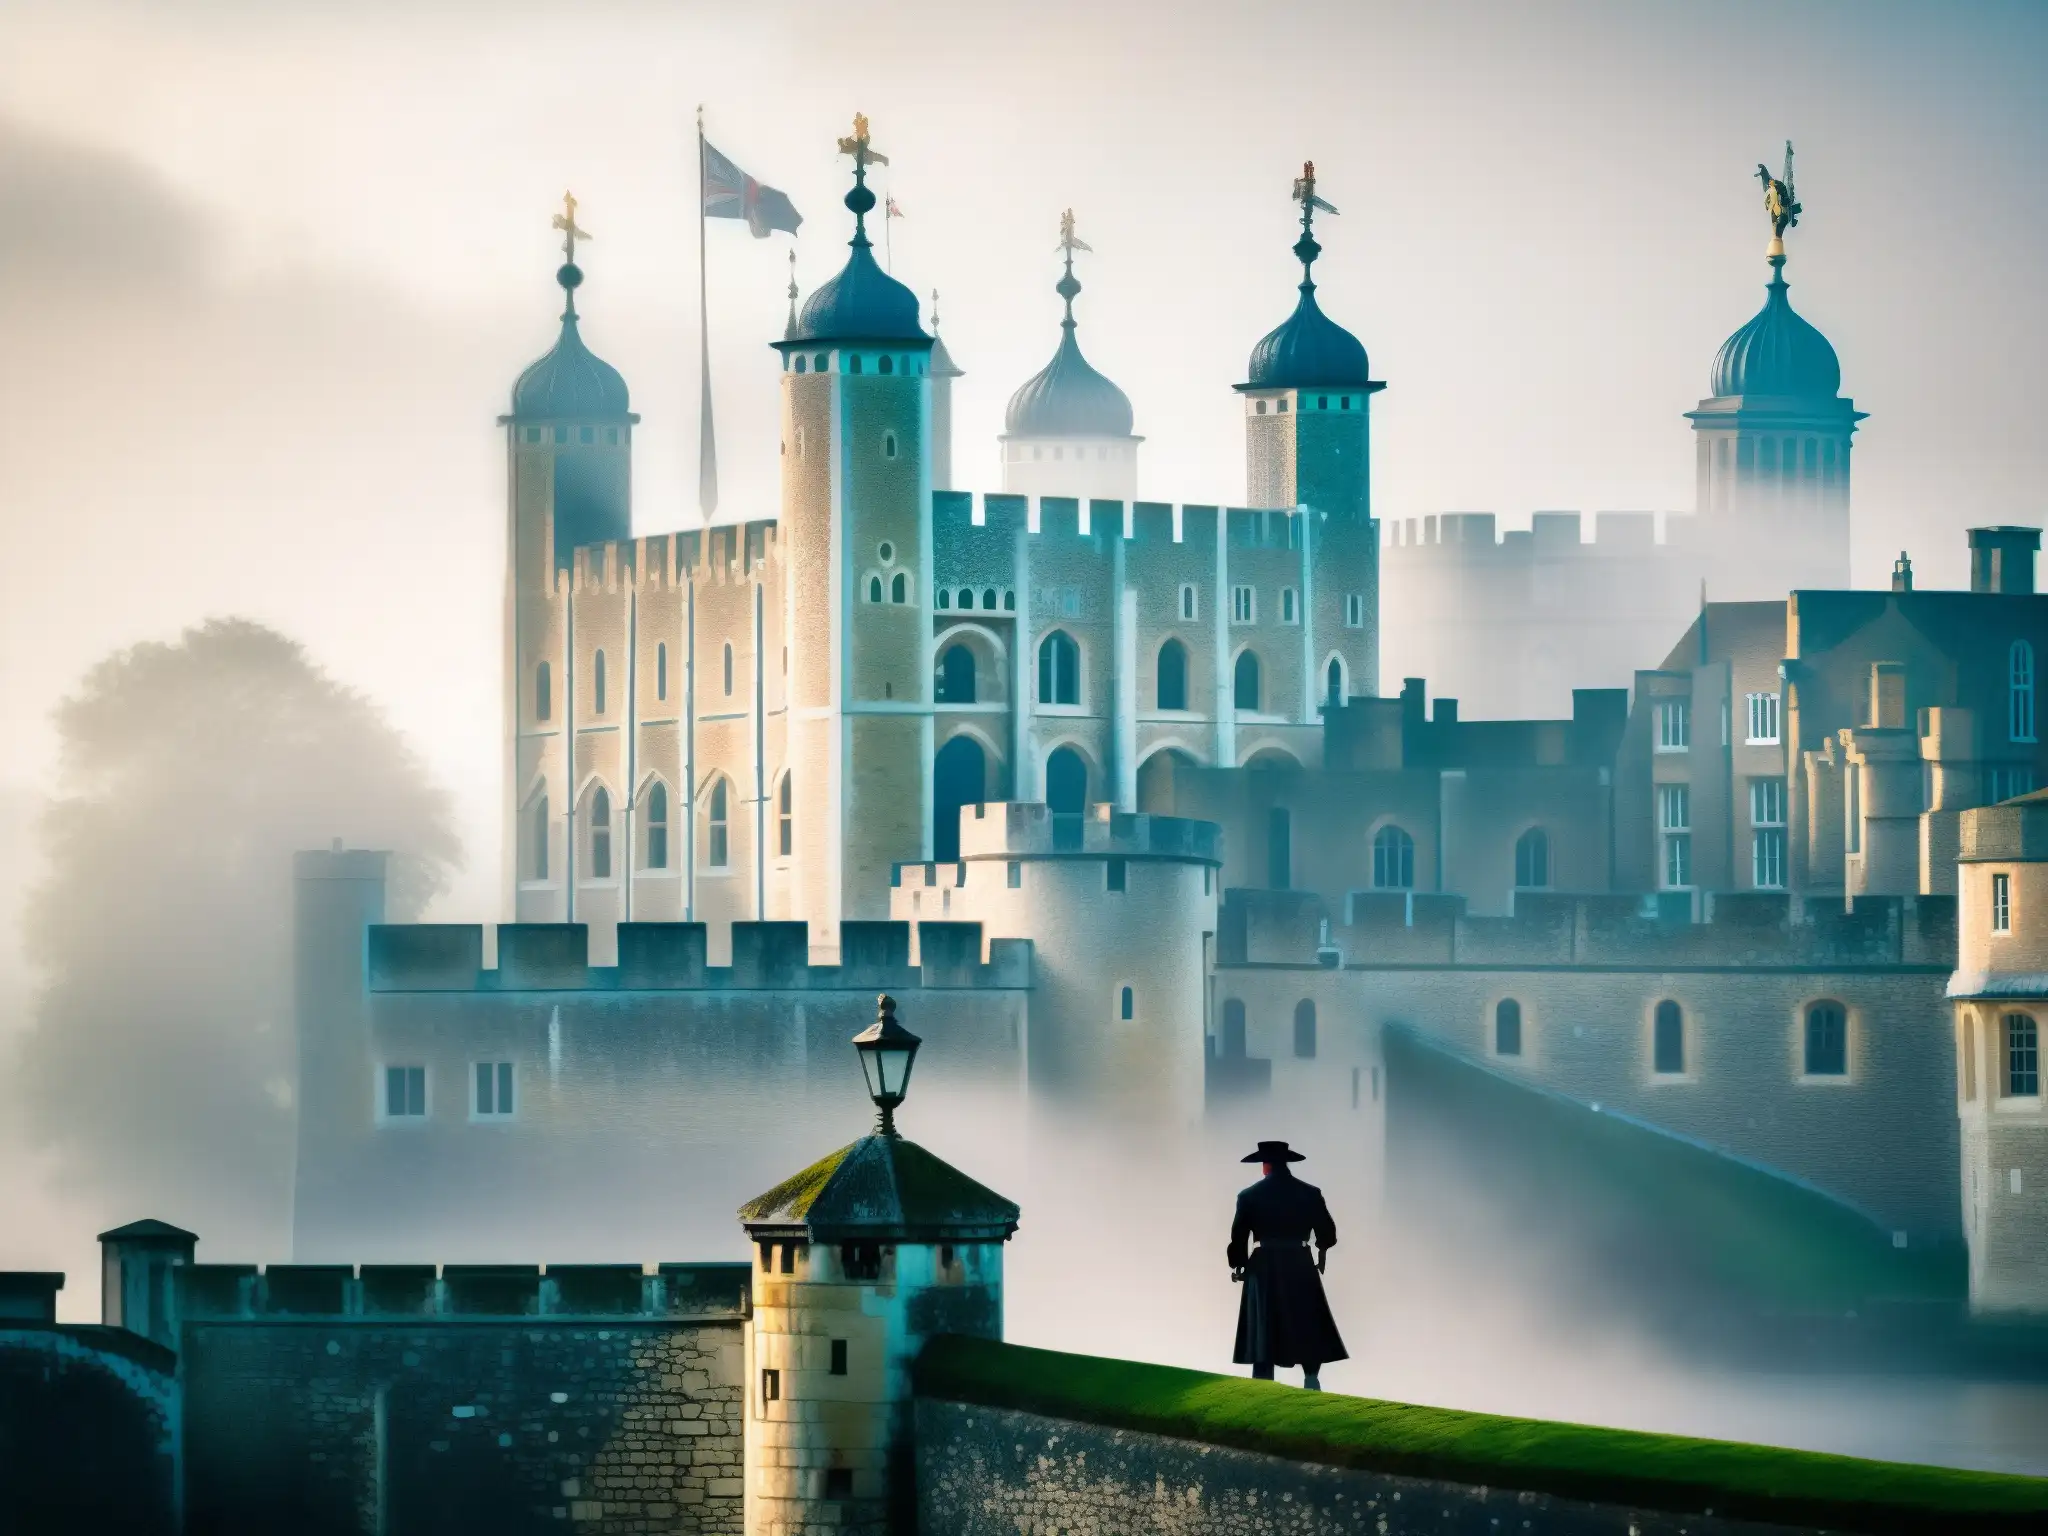 Imagen de la Torre de Londres envuelta en niebla, con la figura fantasmal de un verdugo medieval